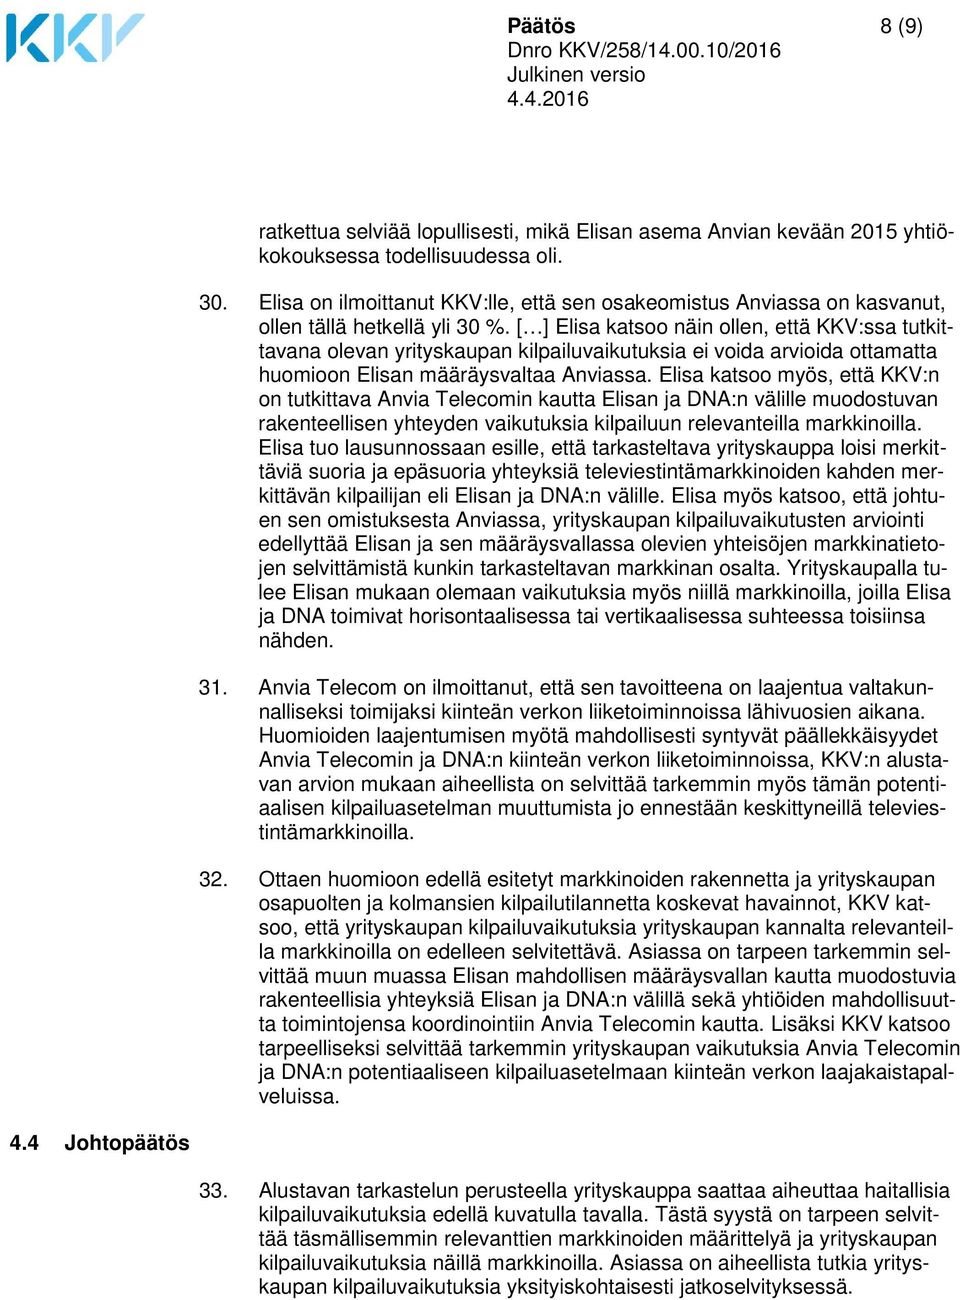 [ ] Elisa katsoo näin ollen, että KKV:ssa tutkittavana olevan yrityskaupan kilpailuvaikutuksia ei voida arvioida ottamatta huomioon Elisan määräysvaltaa Anviassa.